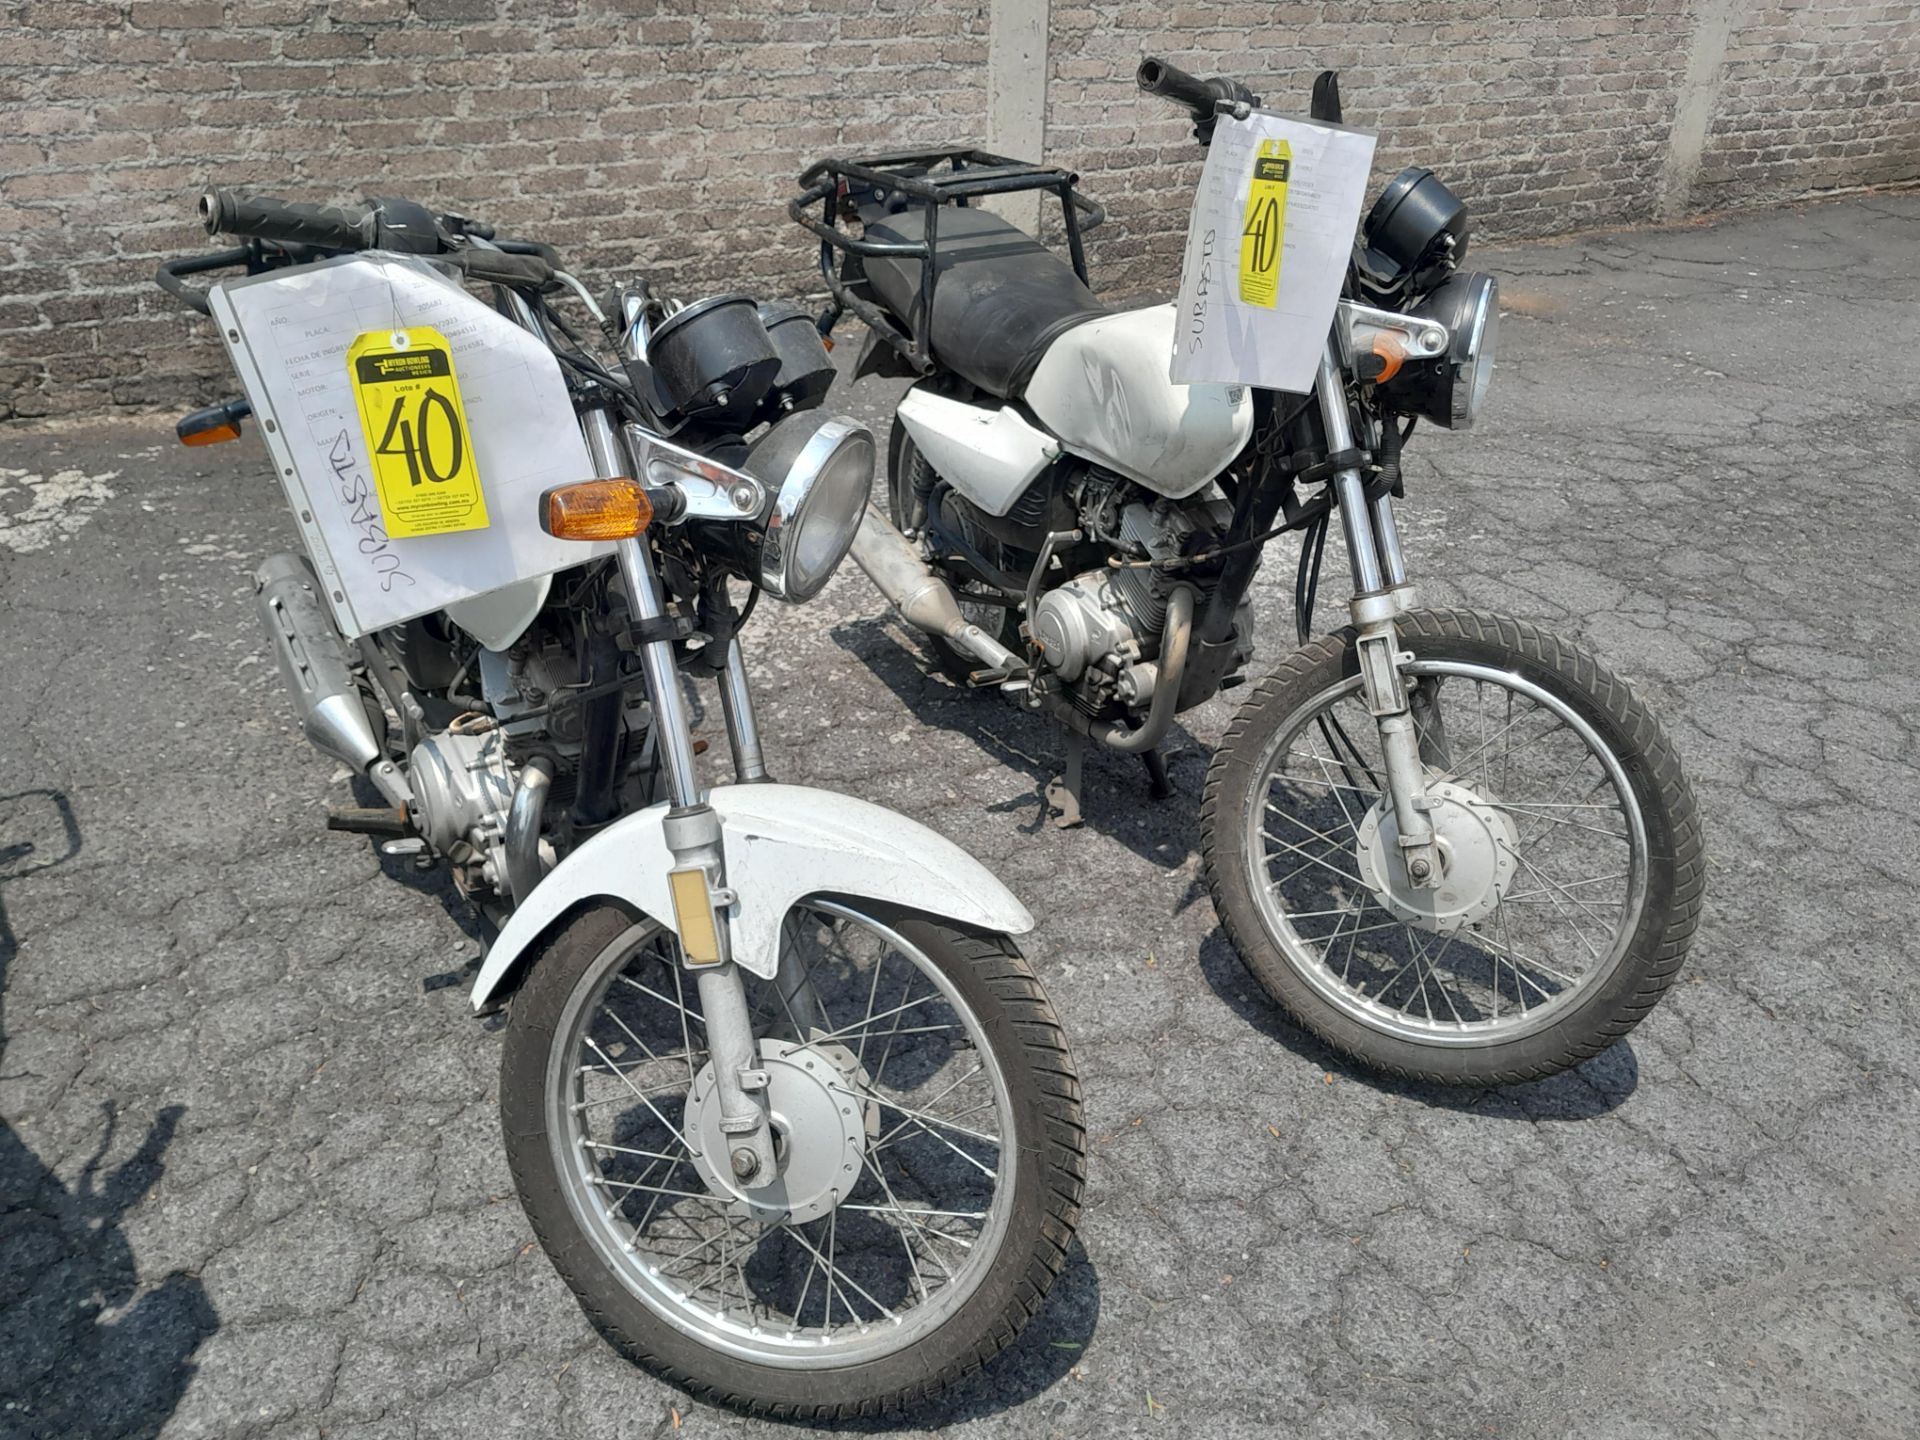 Lote de 2 Motocicletas contiene: 1 Motocicleta de trabajo usada Marca Yamaha YB 125, Modelo 2015, N - Image 2 of 9